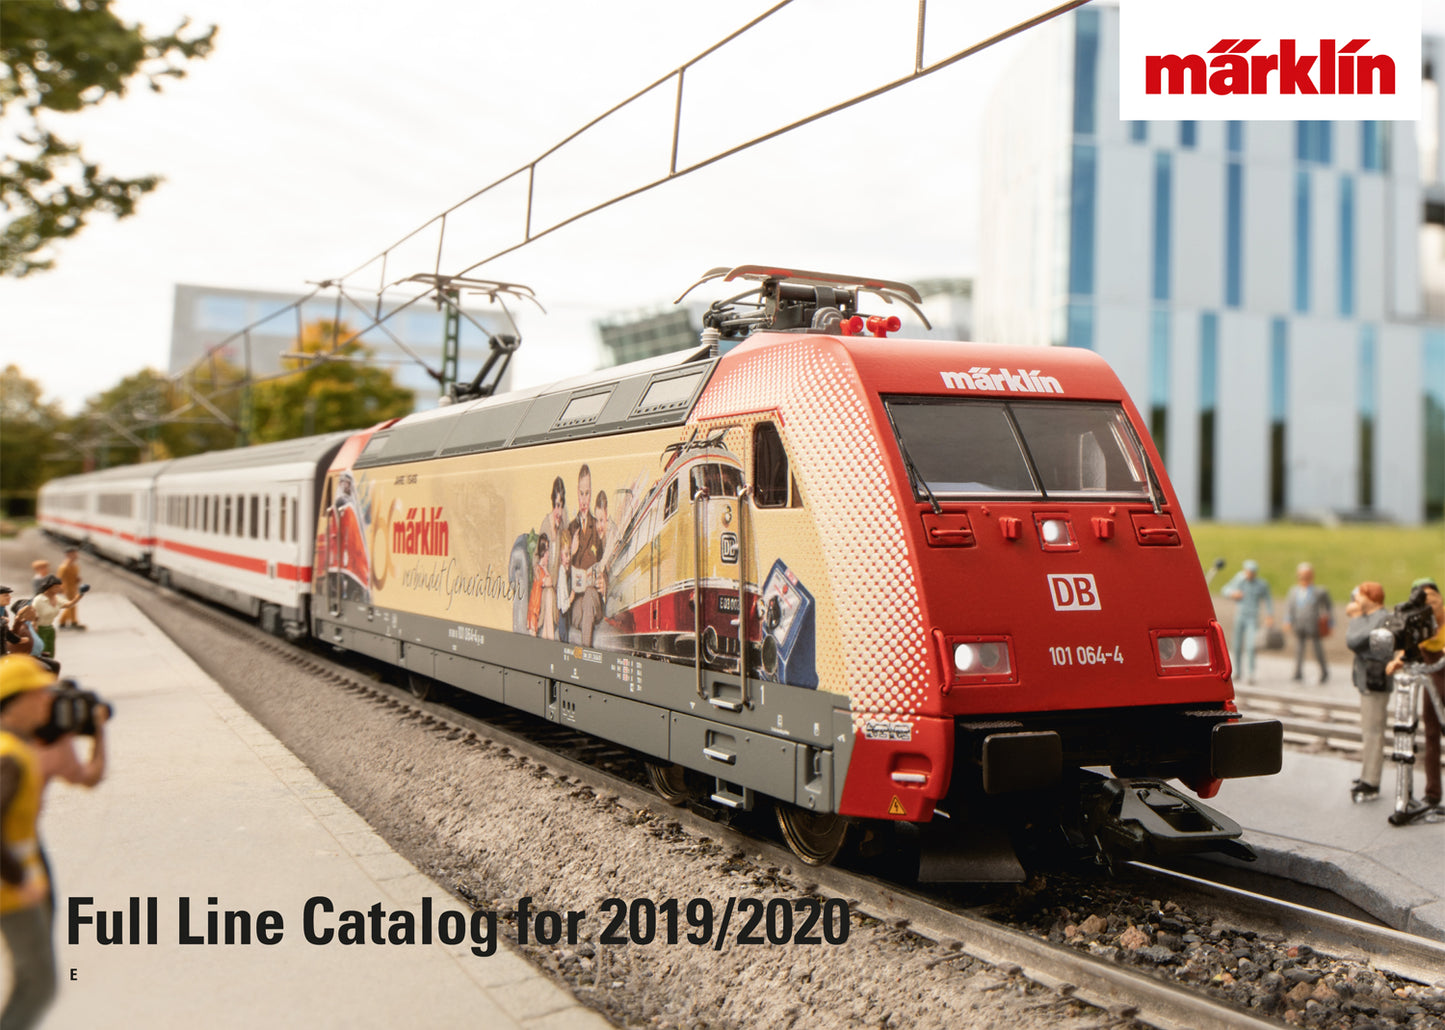 Marklin 15705 - Marklin Full Line Catalog 2019/2020